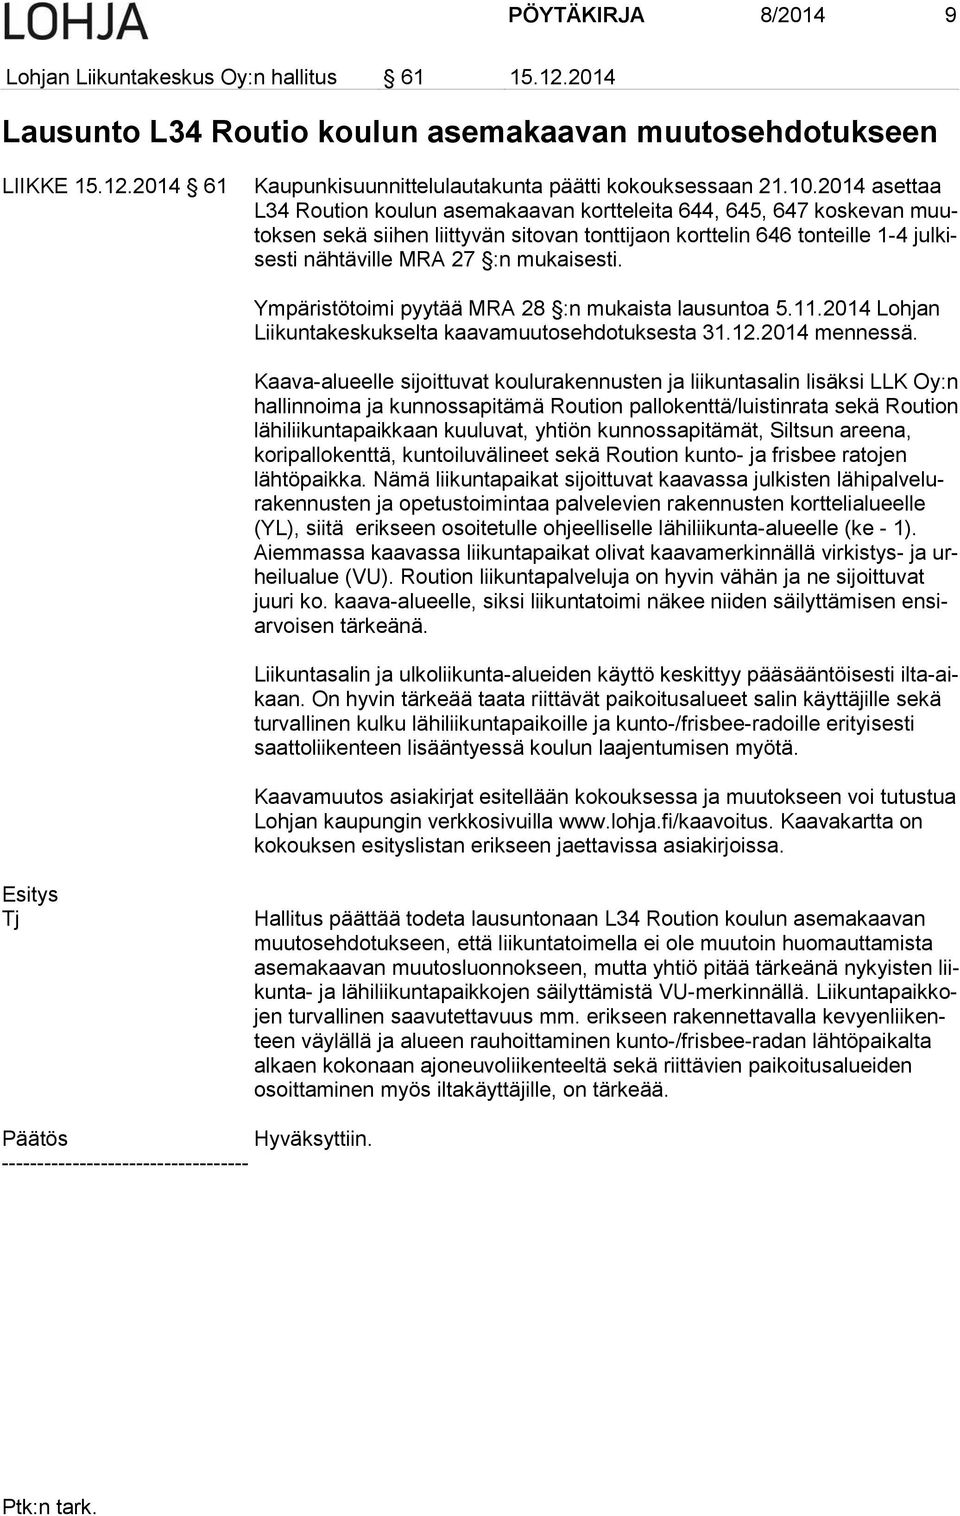 mukaisesti. Ympäristötoimi pyytää MRA 28 :n mukaista lausuntoa 5.11.2014 Lohjan Liikuntakeskukselta kaavamuutosehdotuksesta 31.12.2014 mennessä.